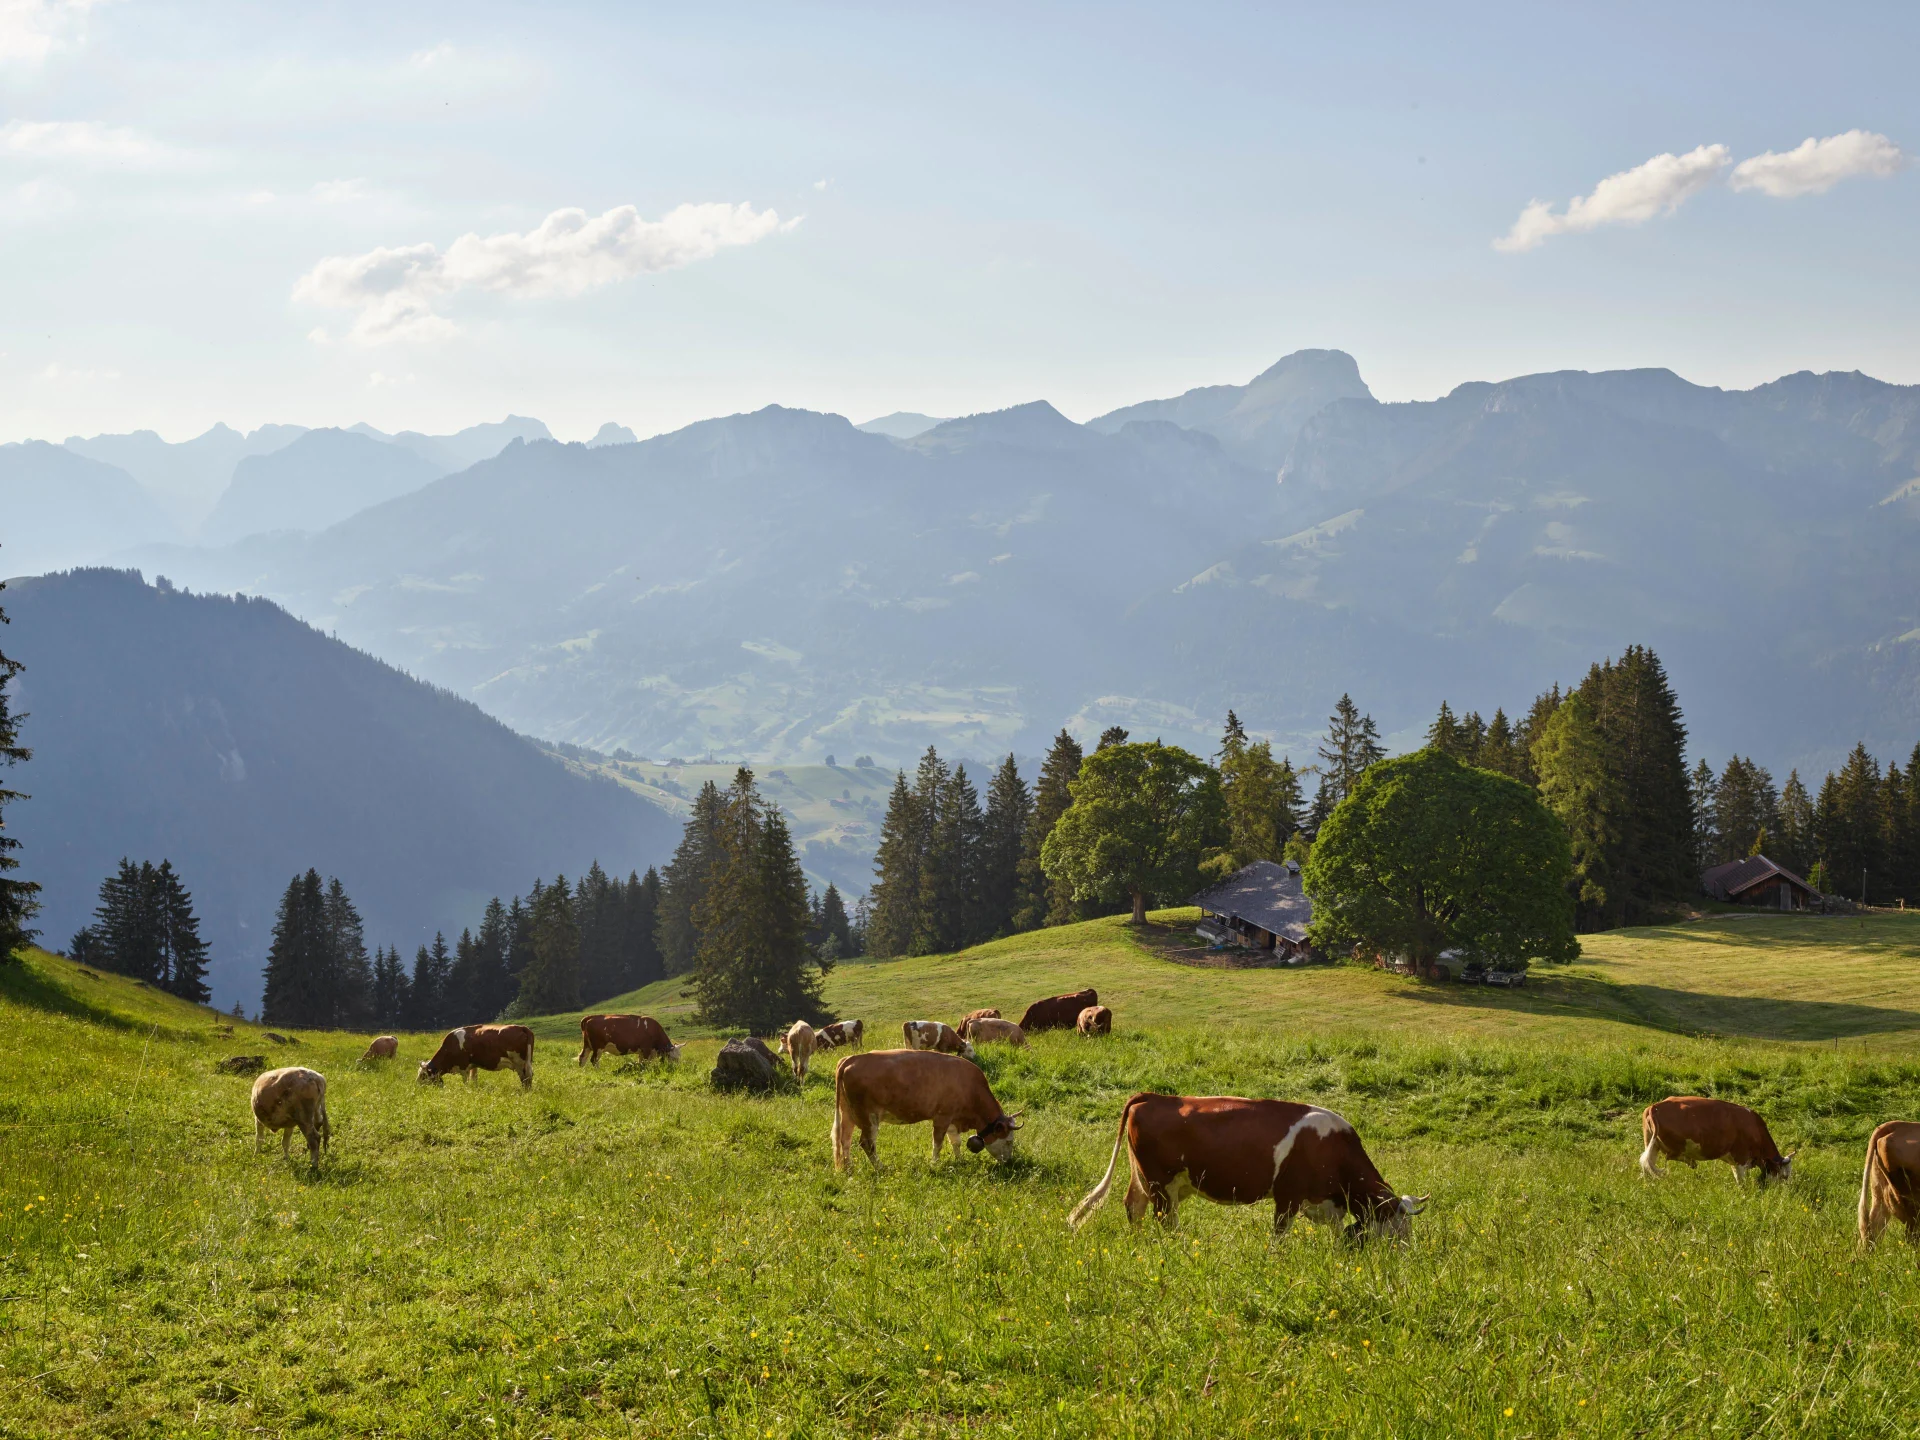 Cows graze in an alpine meadow